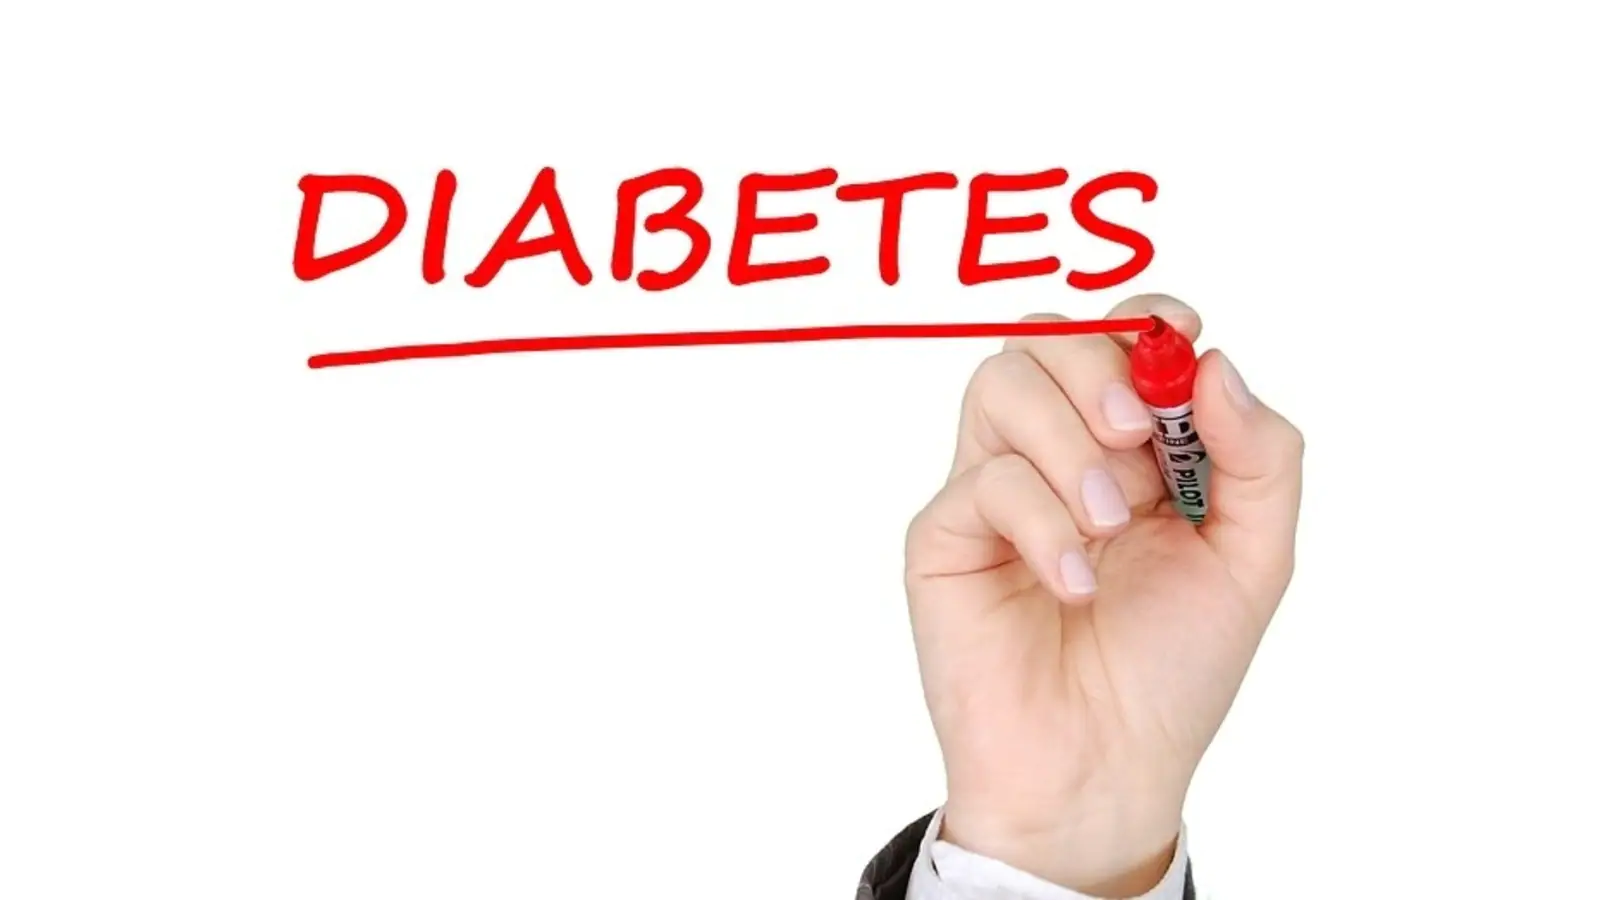 Exercises to control diabetes